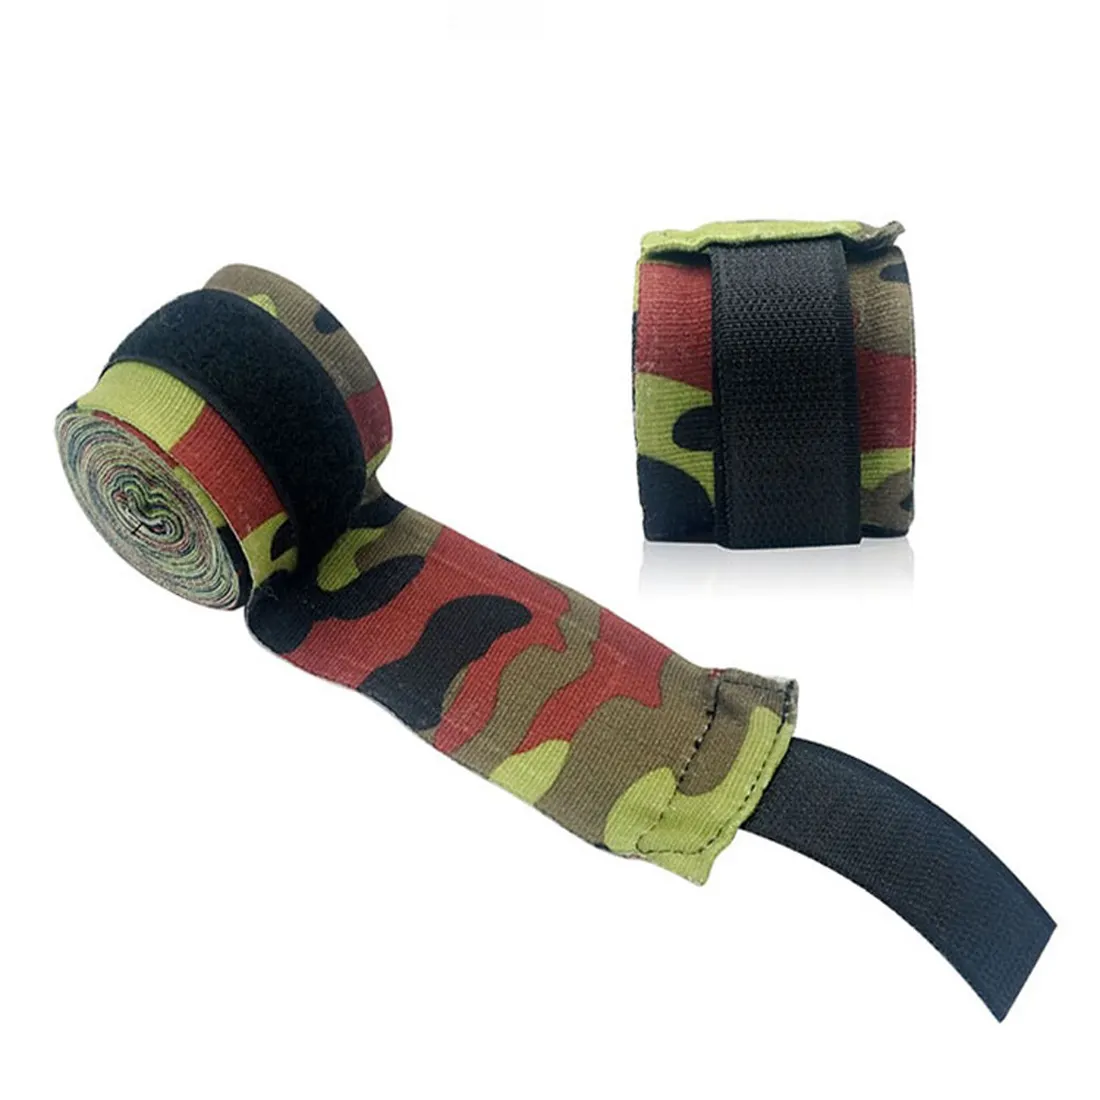 Professionale Unisex palestra Sport mano supporto per il polso cinturino per sollevamento pesi cinturino per polso fasciatura avvolgente